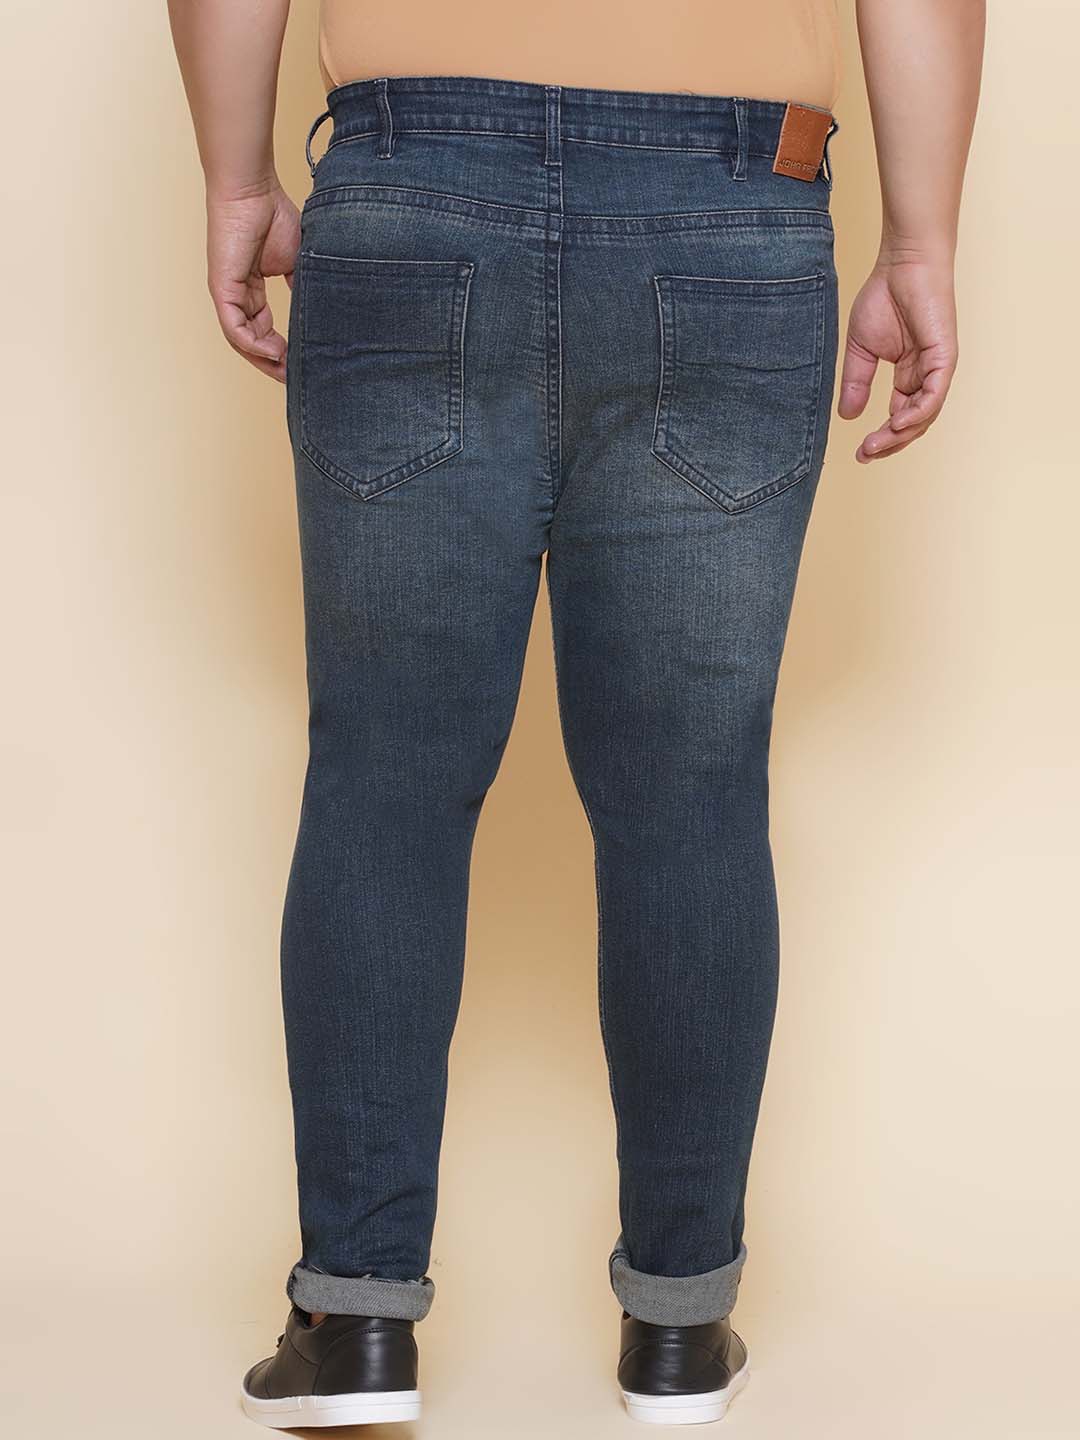 bottomwear/jeans/JPJ12421/jpj12421-5.jpg